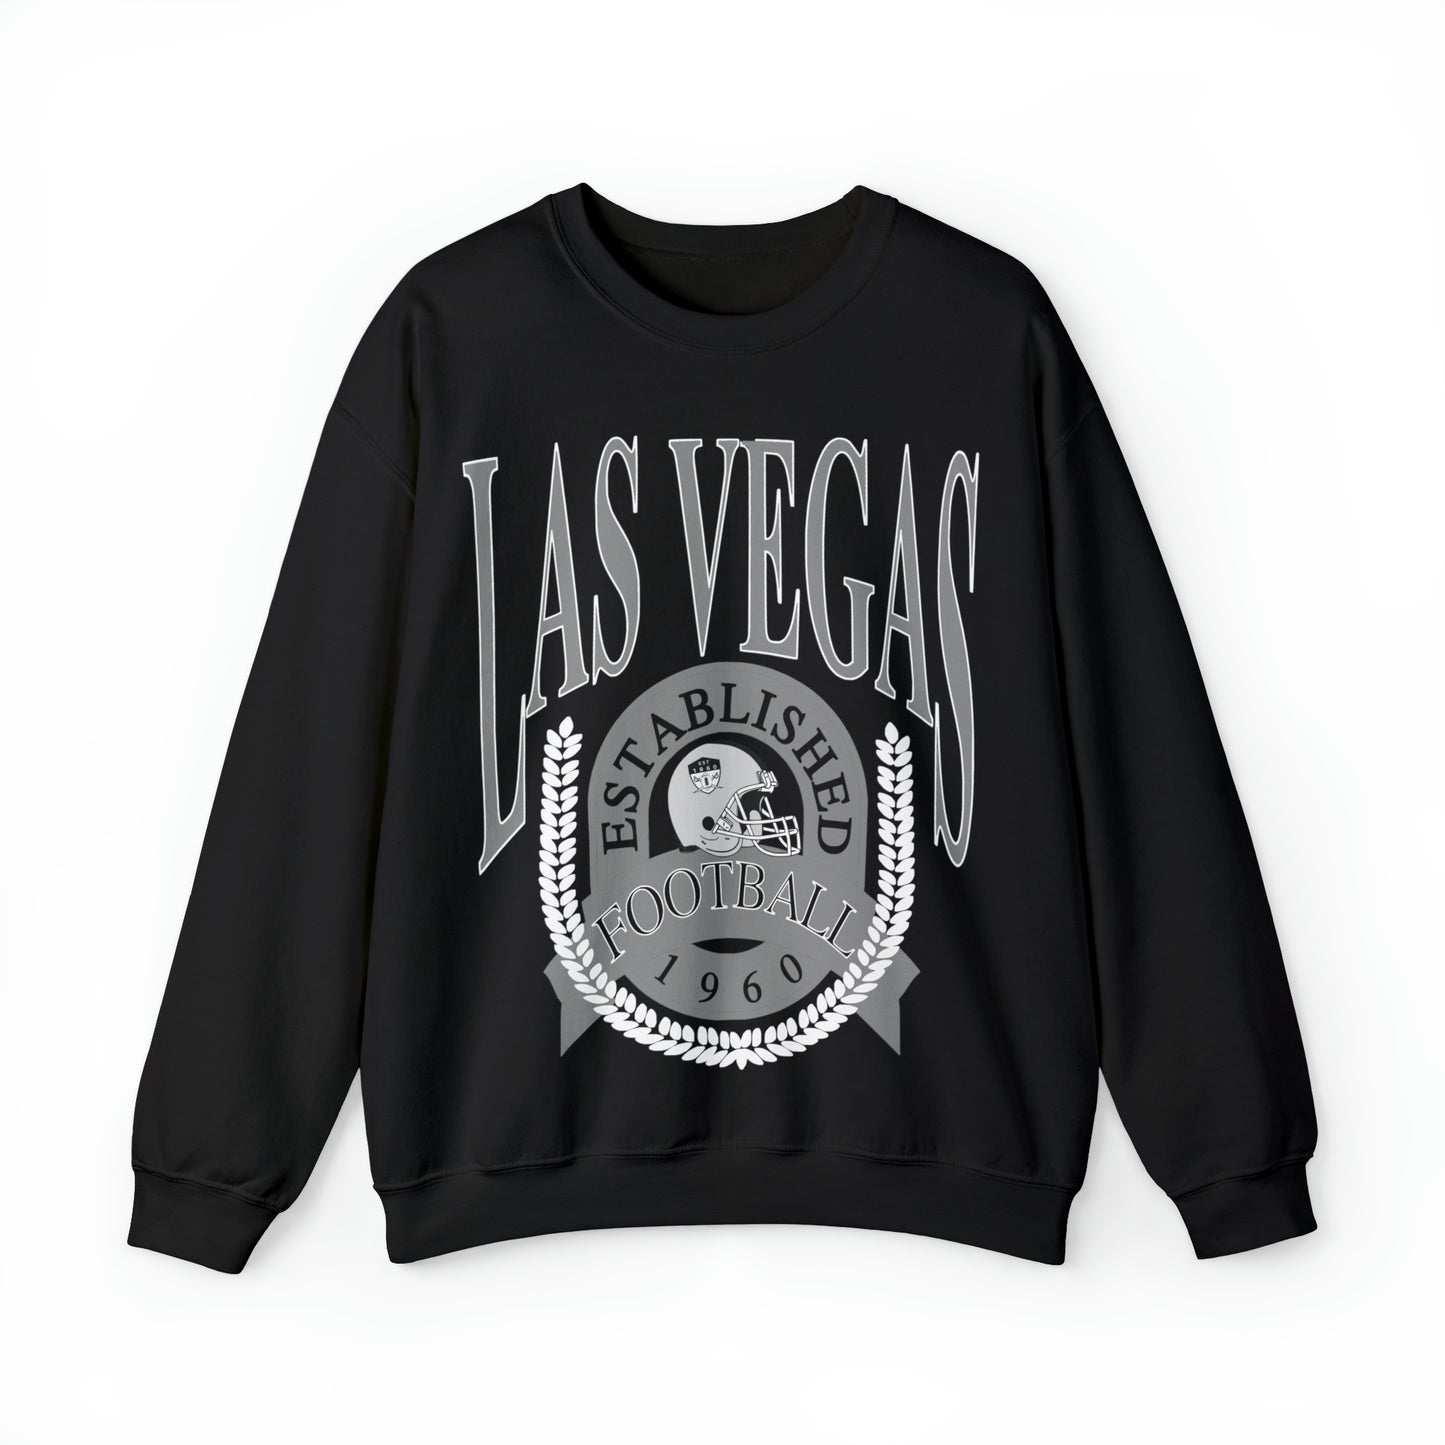 Black Vintage Las Vegas Raiders Football Sweatshirt - Retro Style NFL Unisex Crewneck Hoodie - Design 1